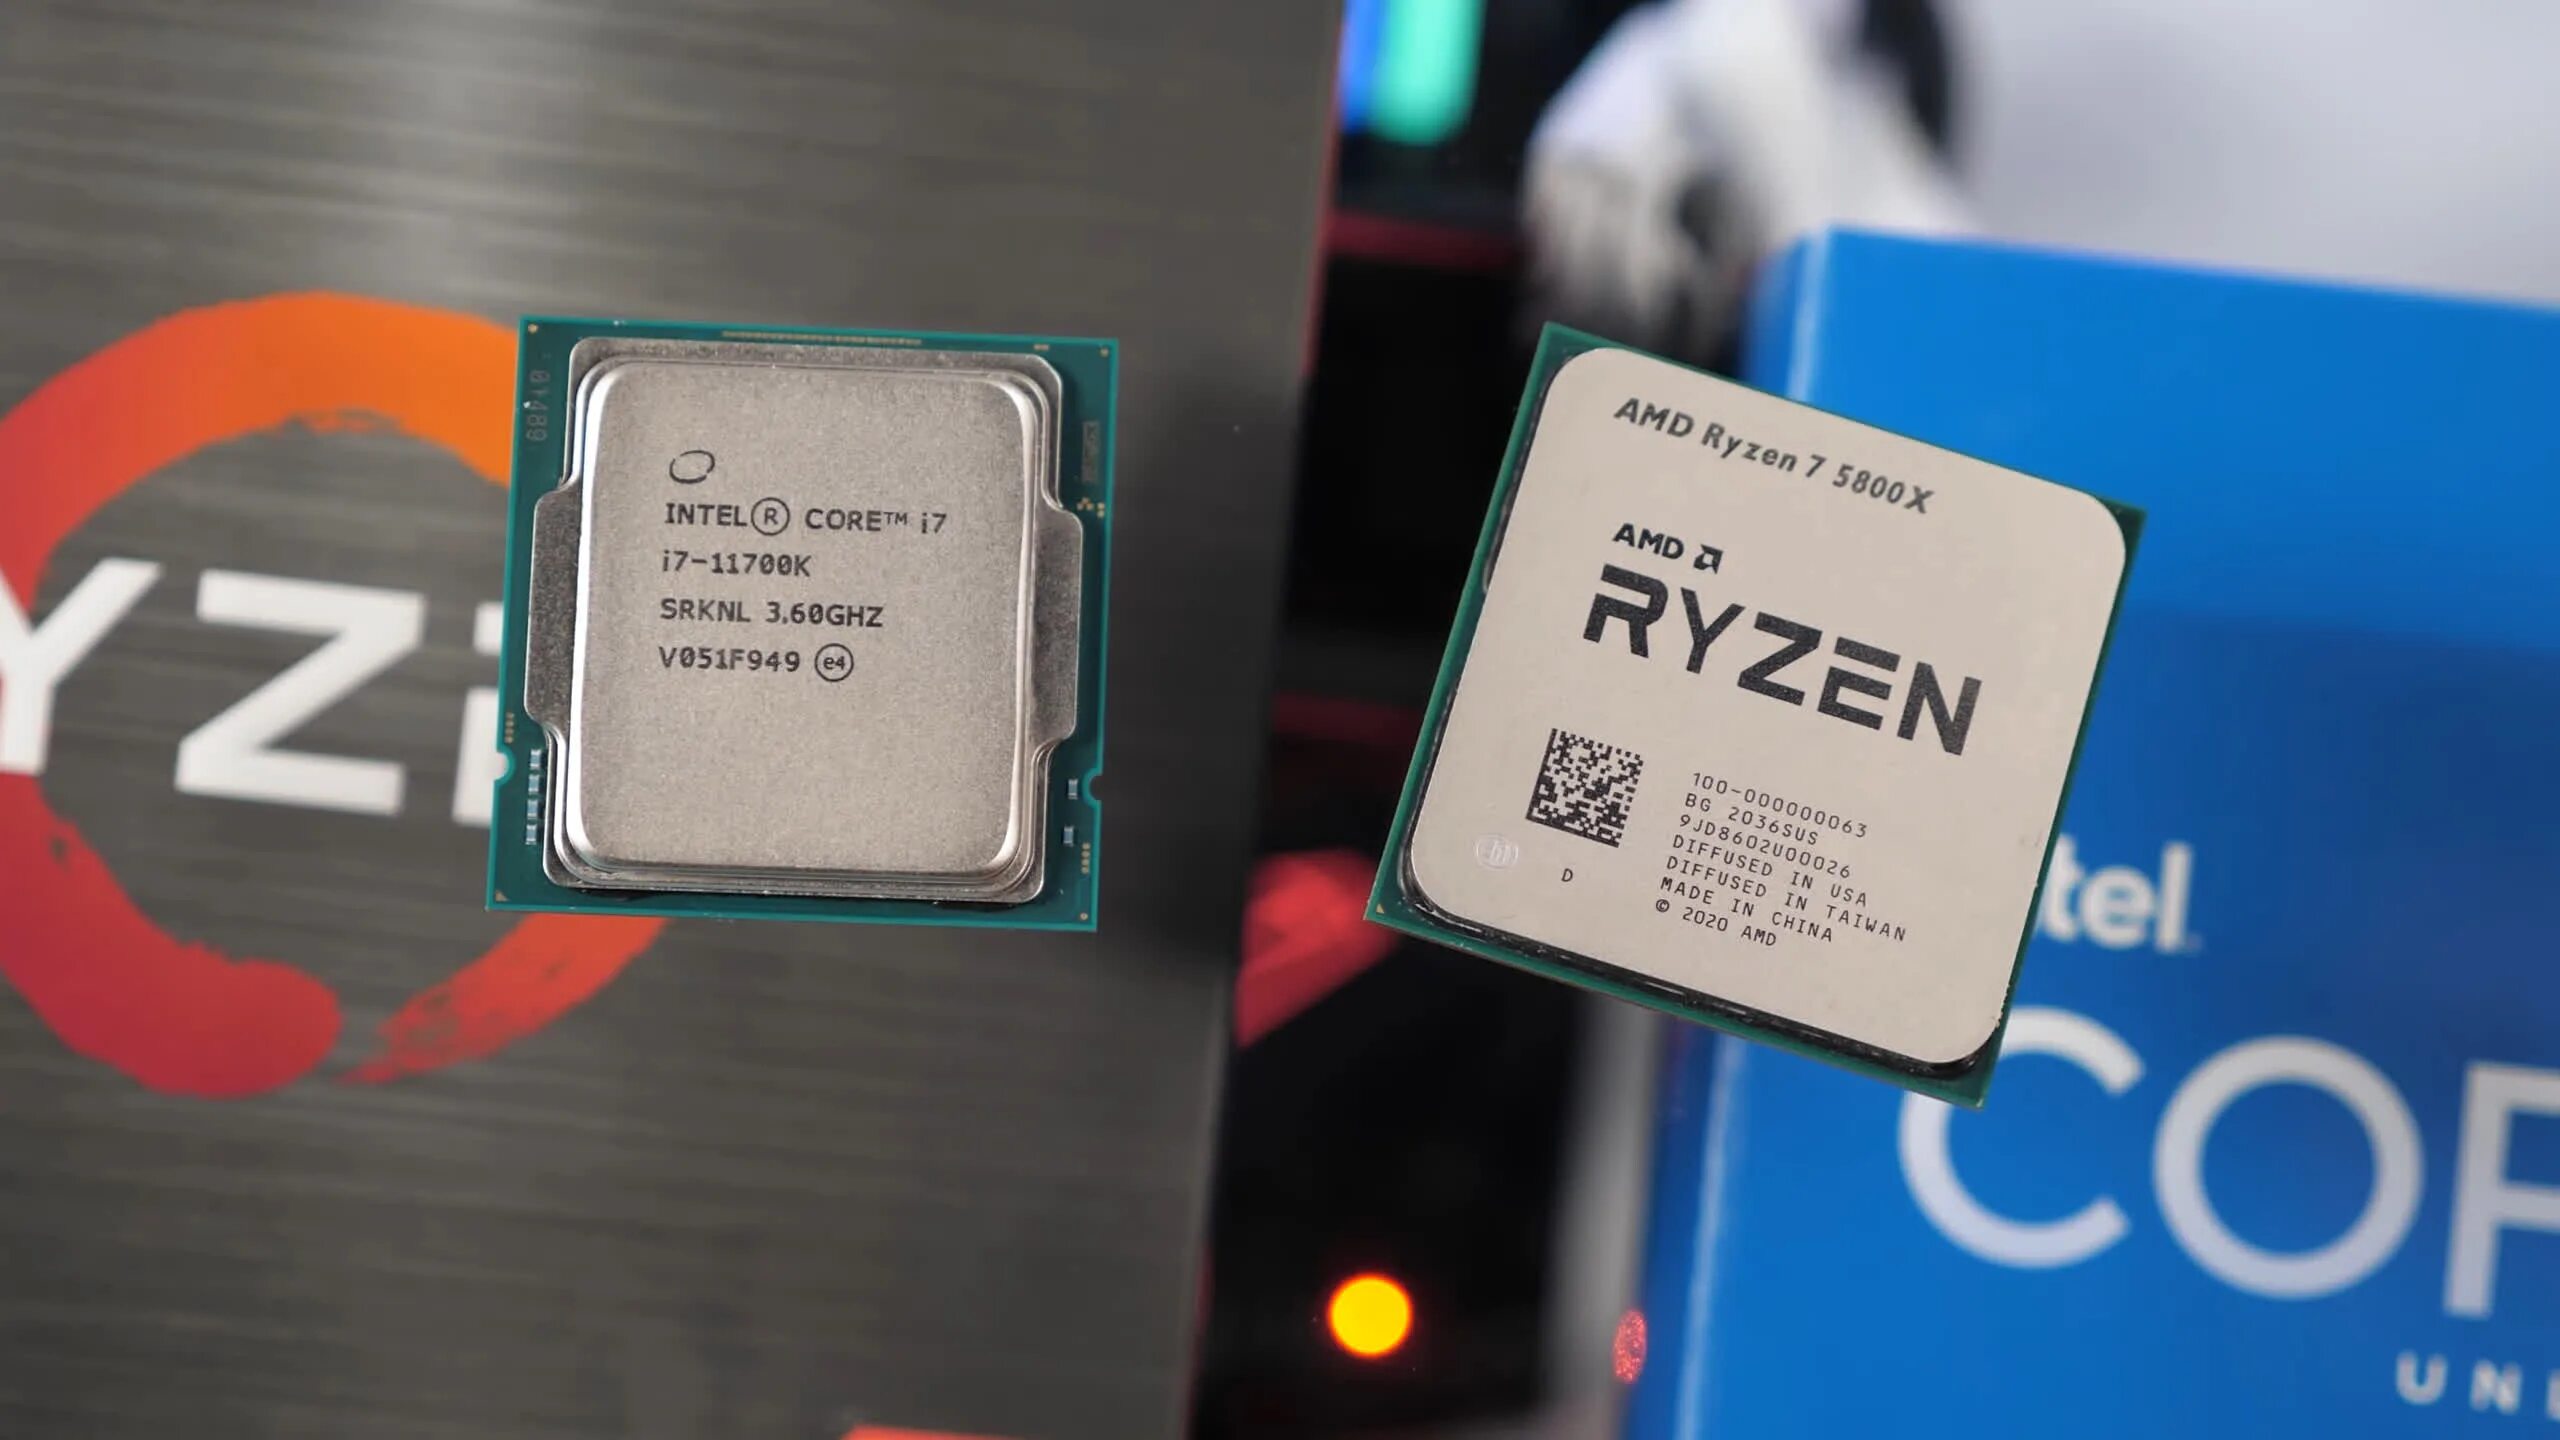 Intel core i7 vs amd ryzen 7